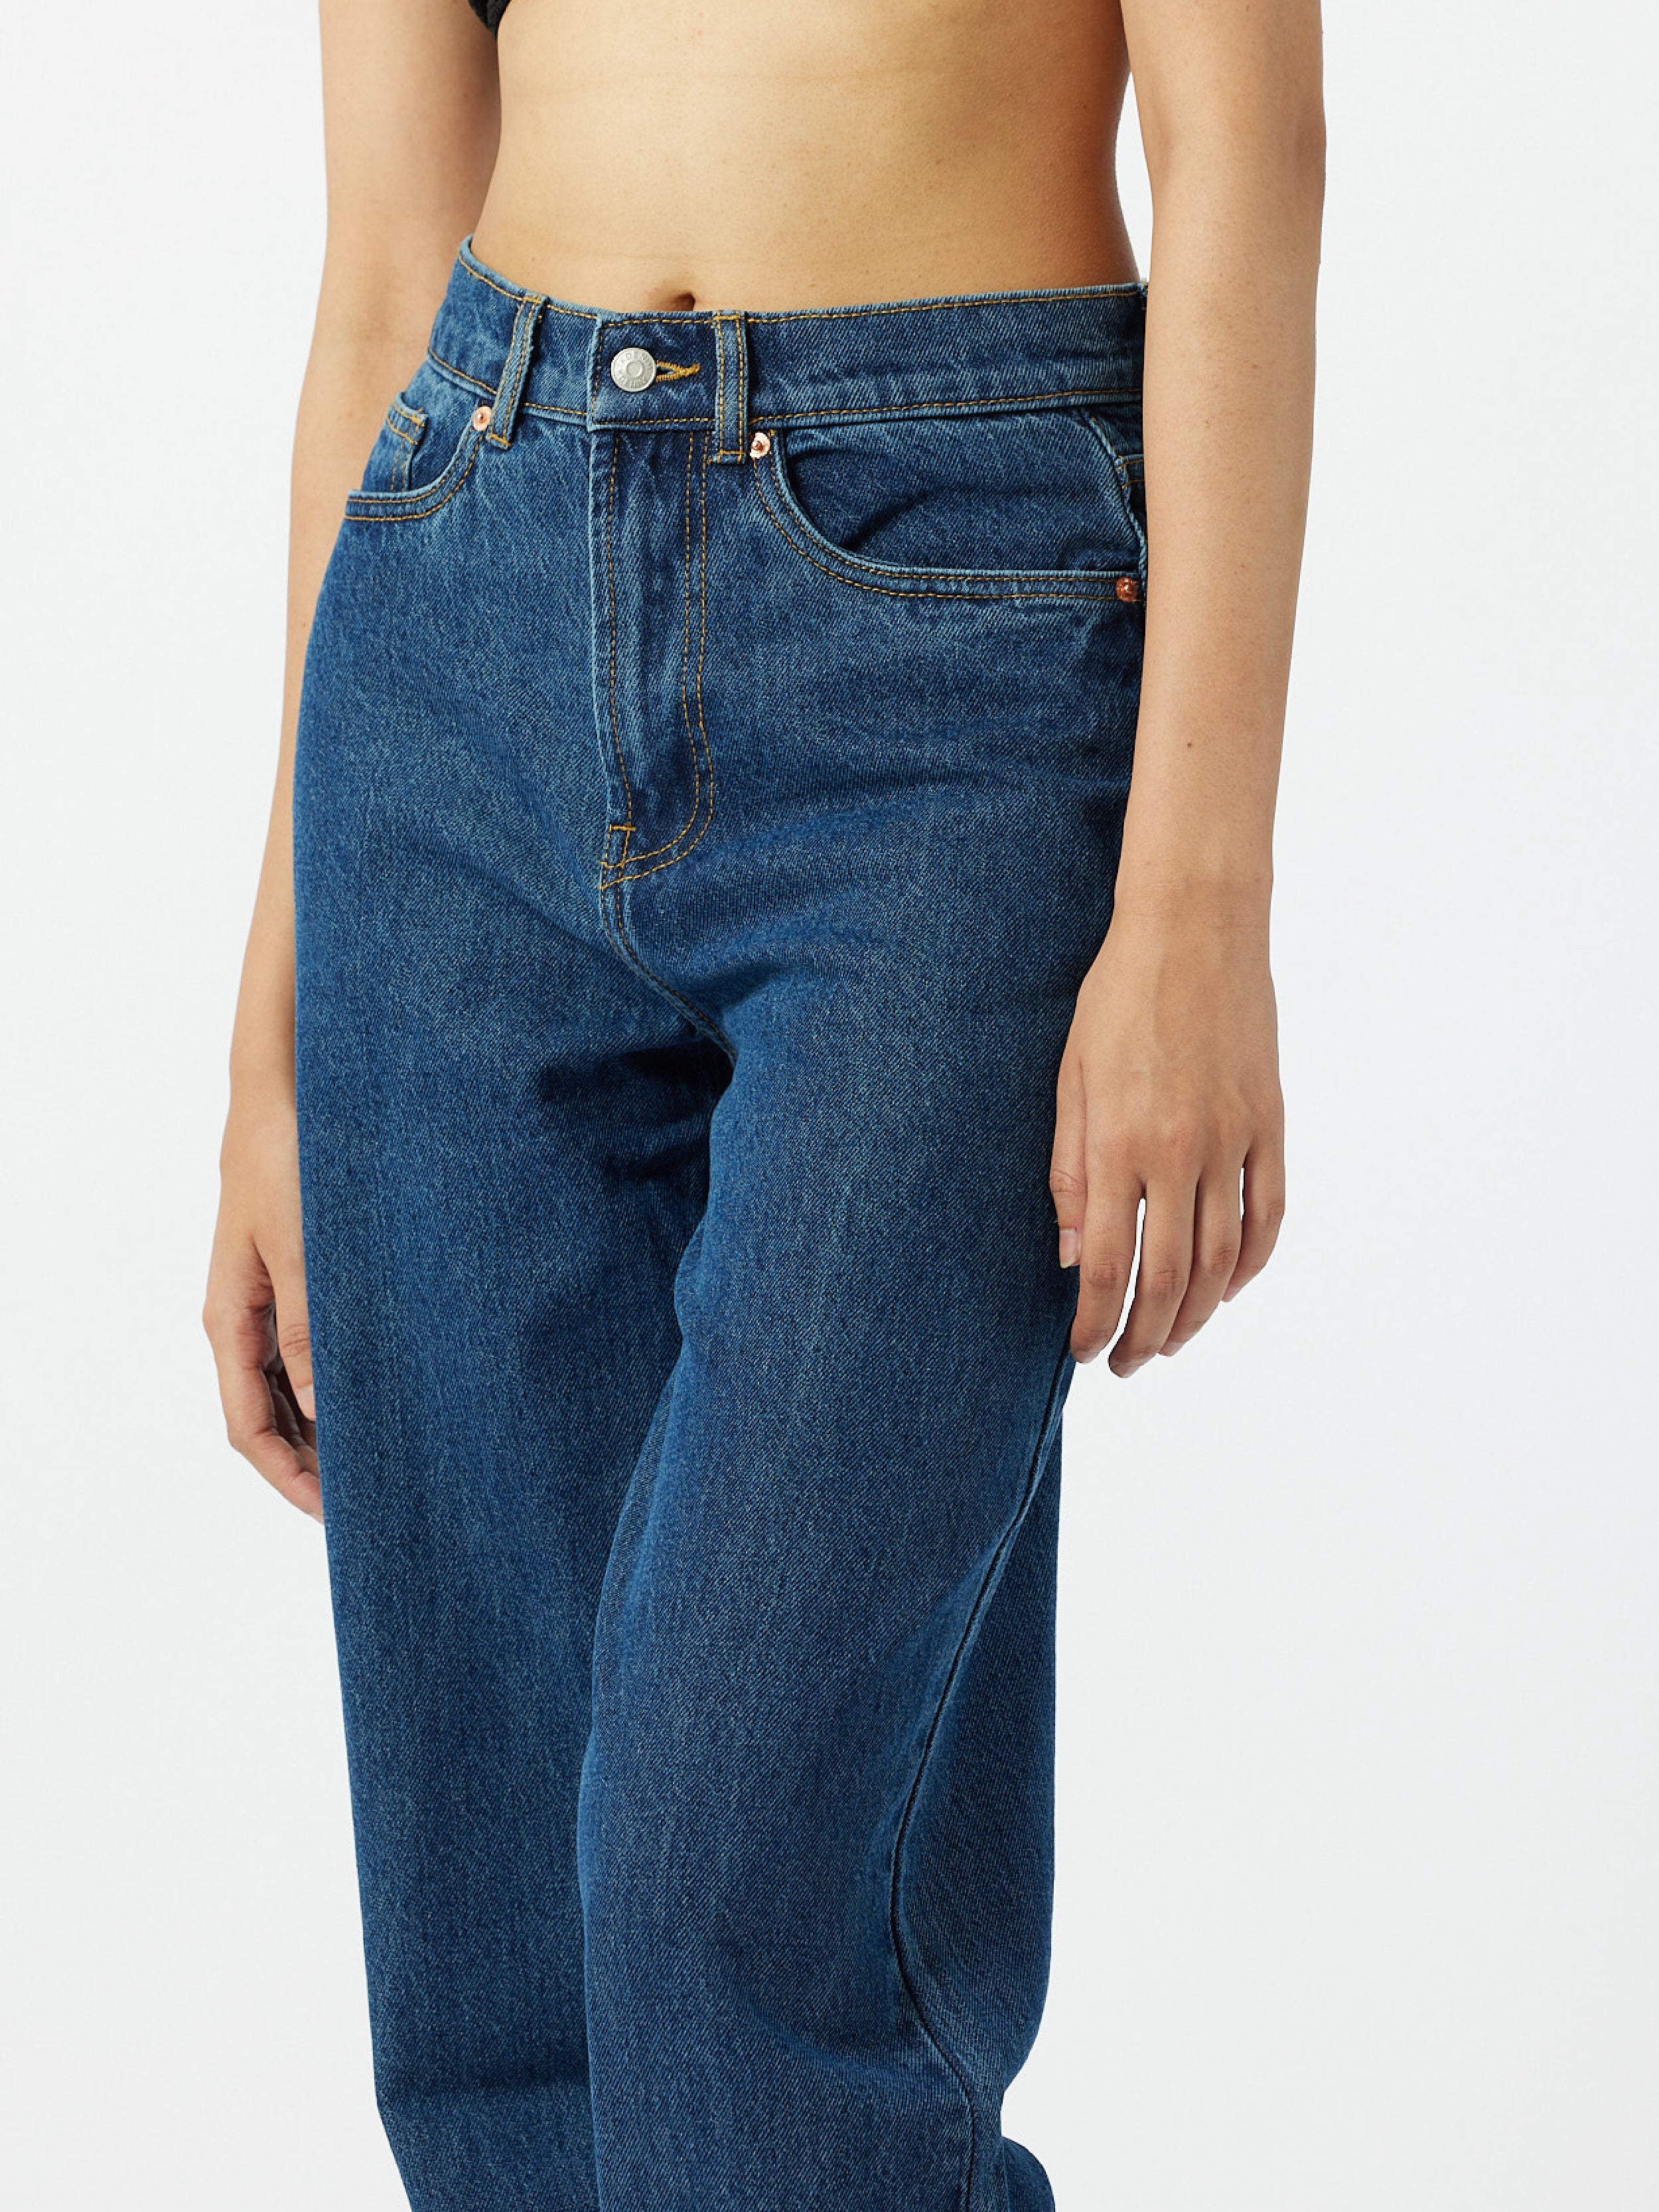 Jeans & Trousers | Koovs Denim | Freeup